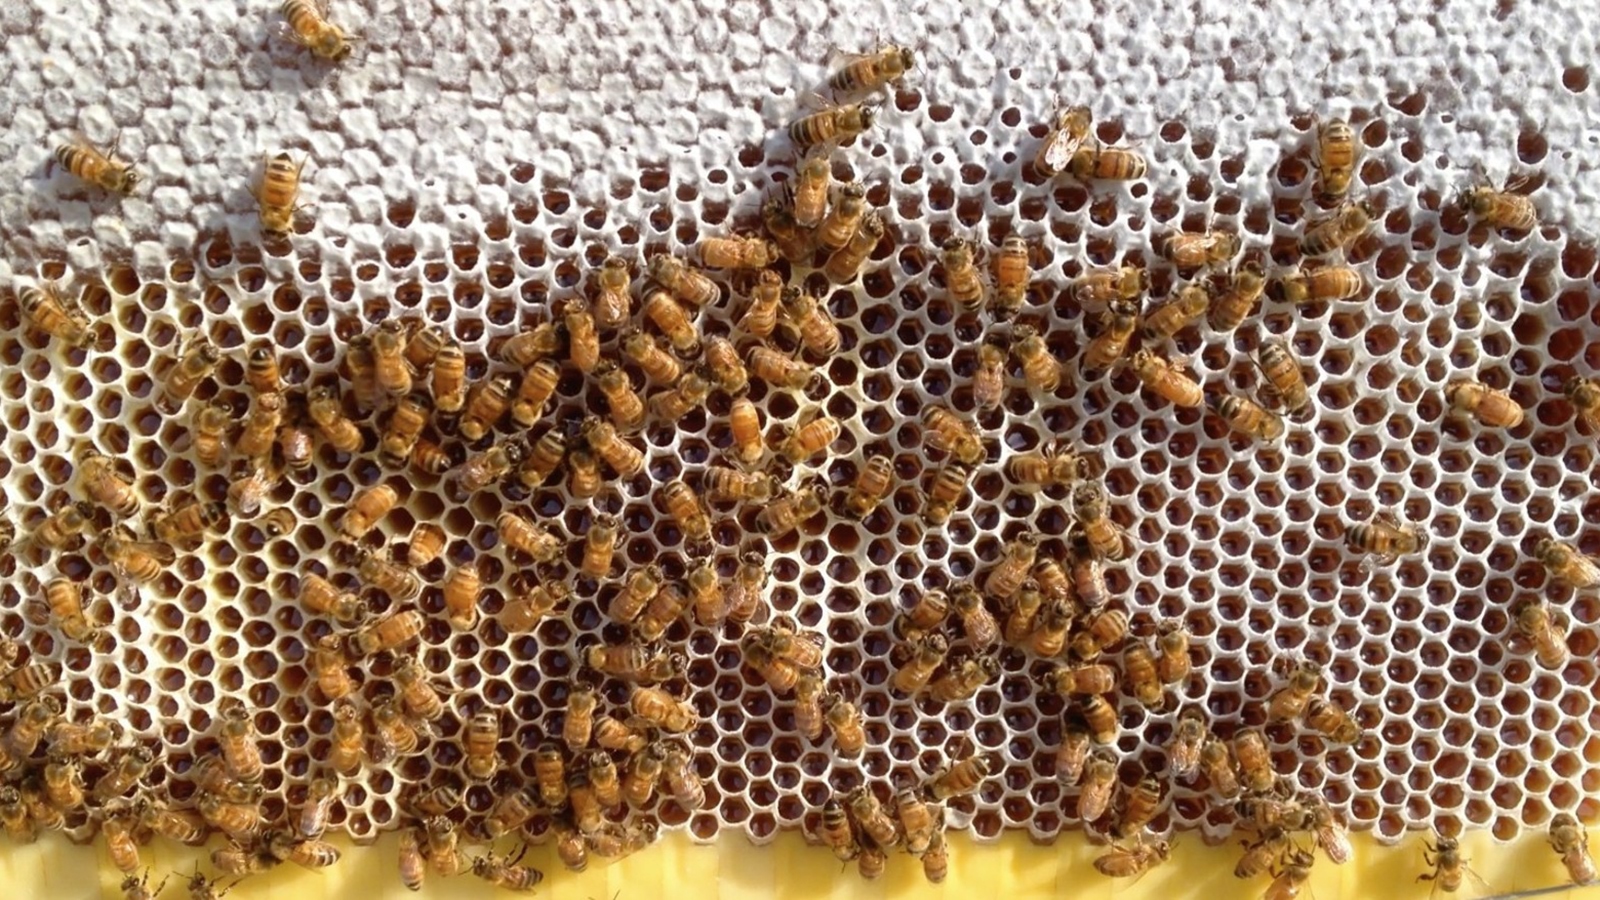 تقرير بحثي يحذر من اندثار مهنة النحل في اليمن بسبب تداعيات الصراع